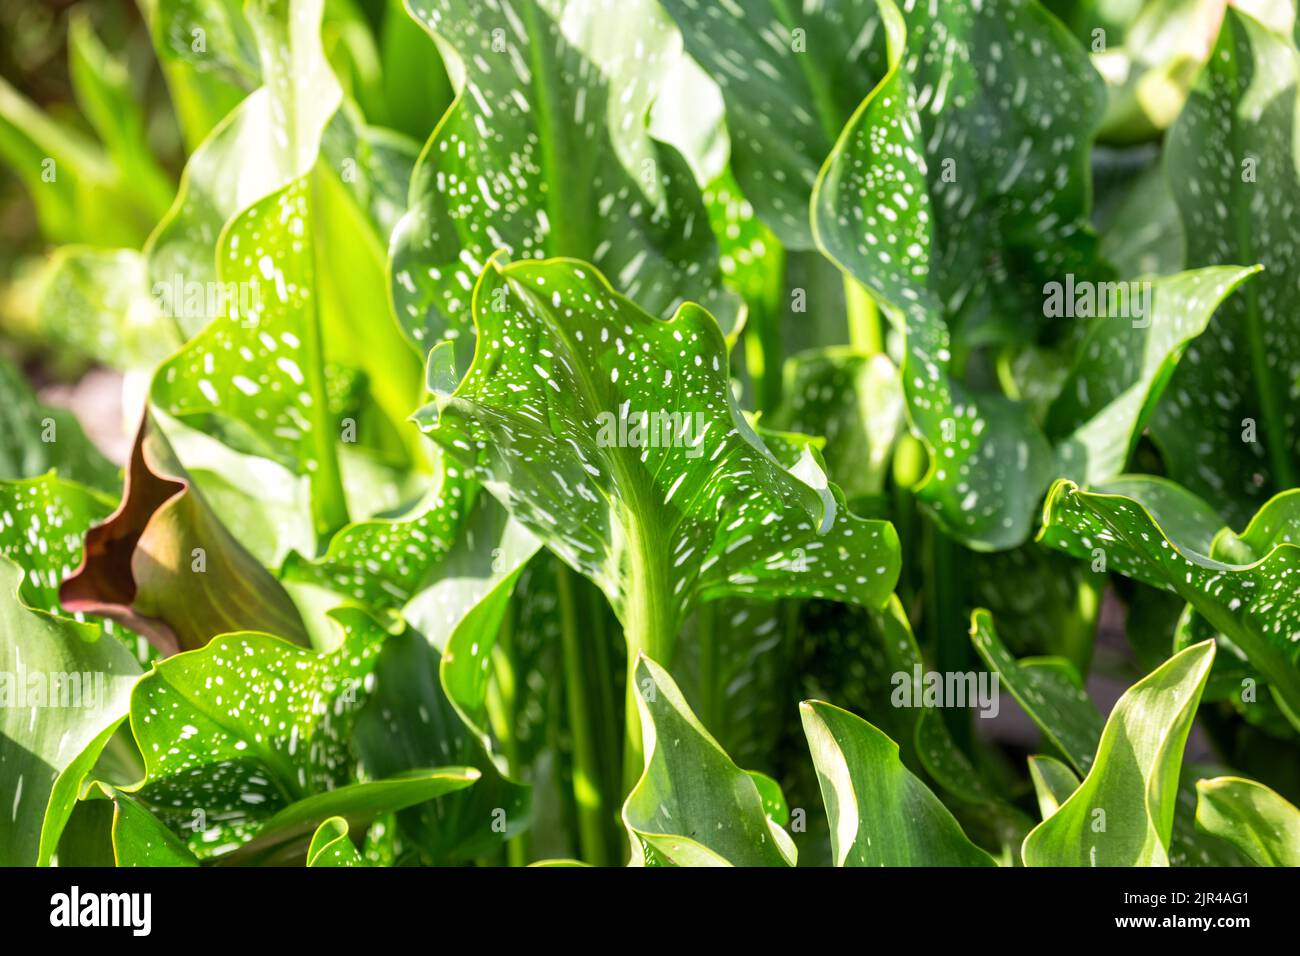 Zierpflanze Zantedeschia mit großen grünen Blättern mit weißen Flecken Stockfoto